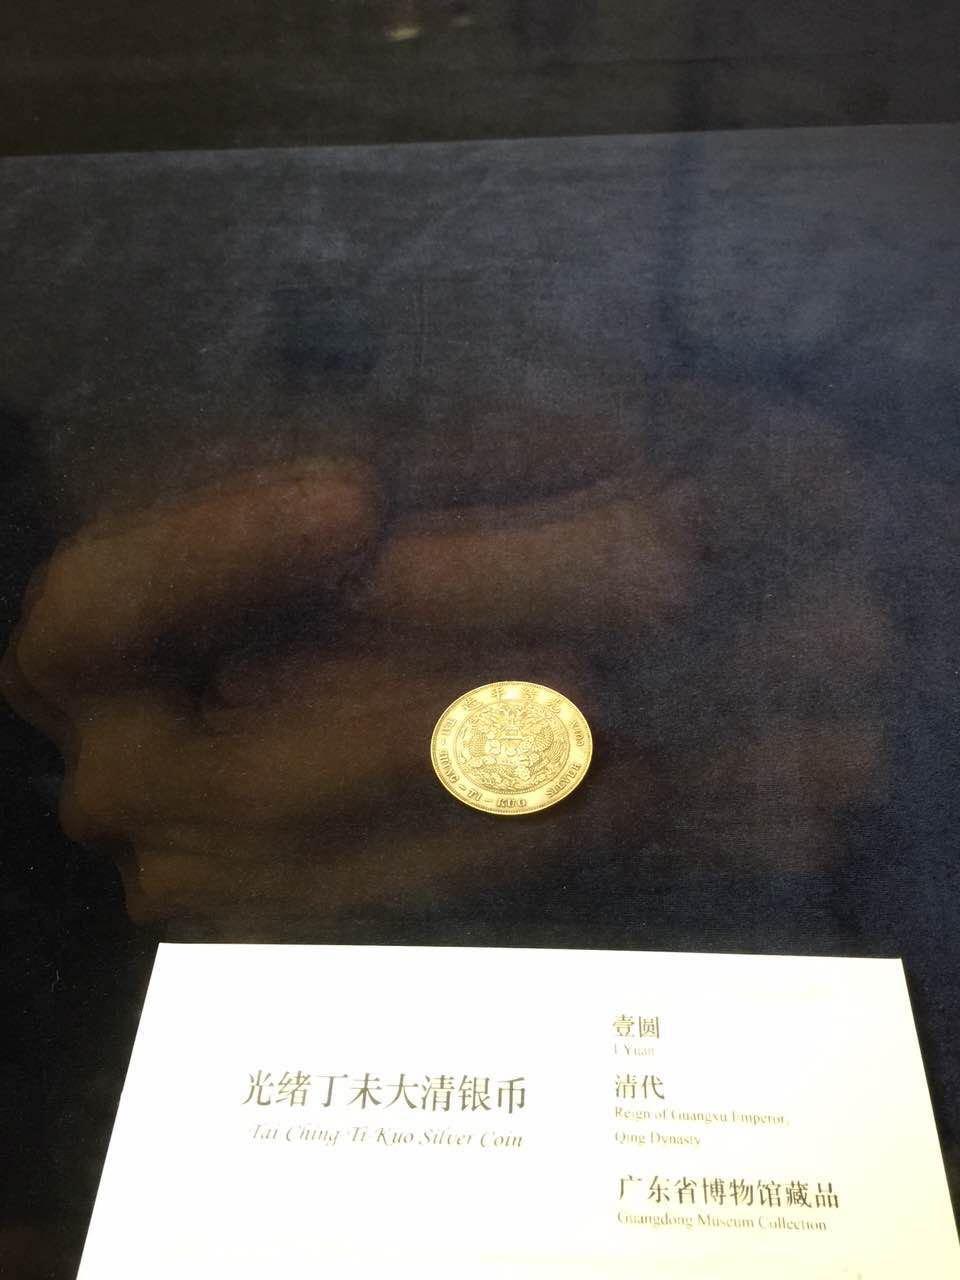 大清银币上为什么写的是粤语译音?